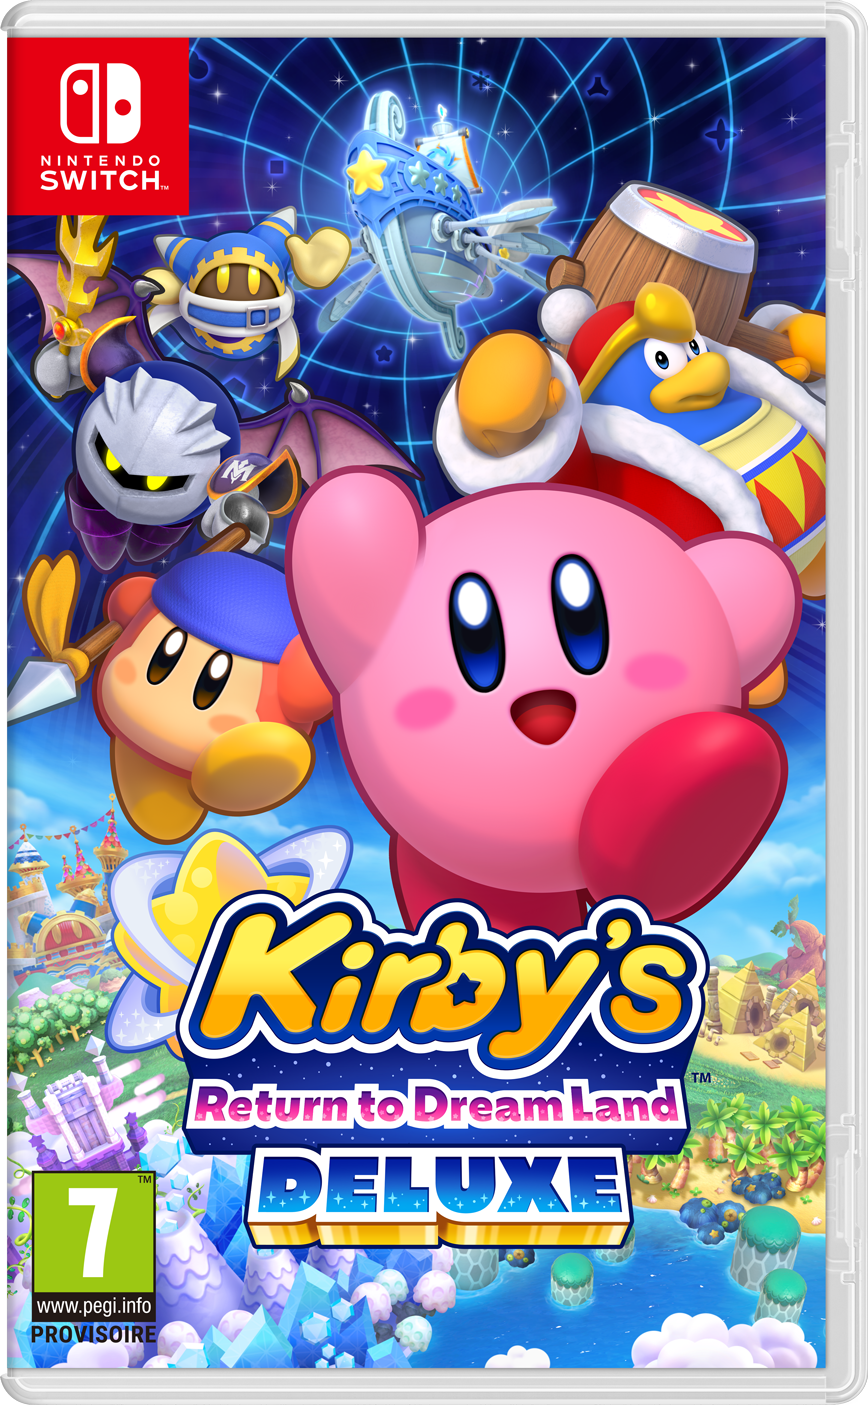 KirbysReturnToDreamLandDeluxe_DUMMY_pkg_FR